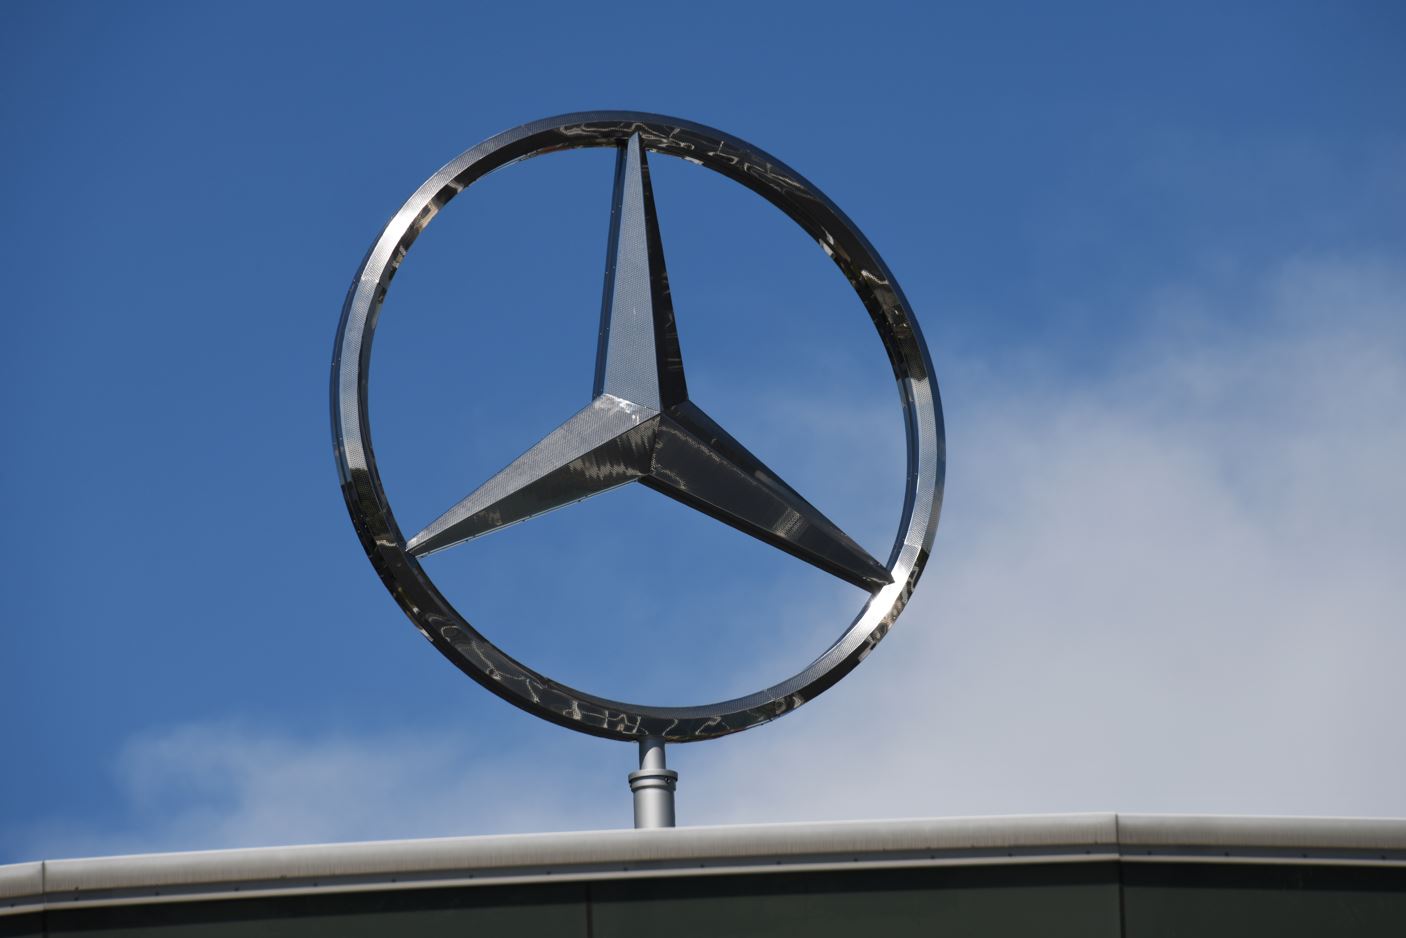 Ein großer Mercedes-Benz-Stern prangt in den Himmel.